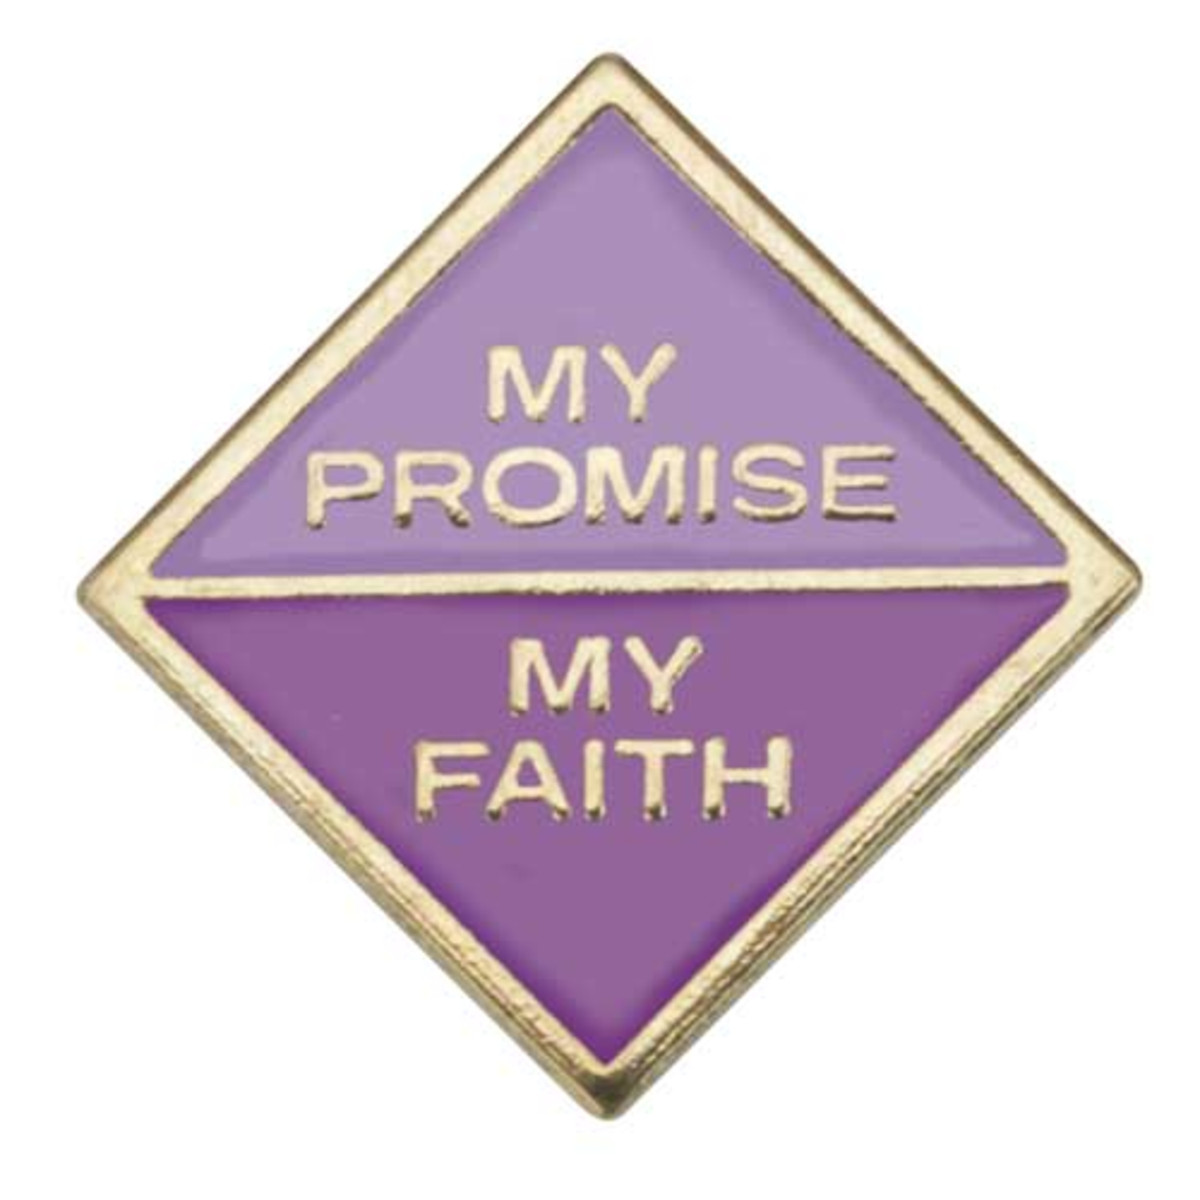 Jr. My Promise My Faith 1